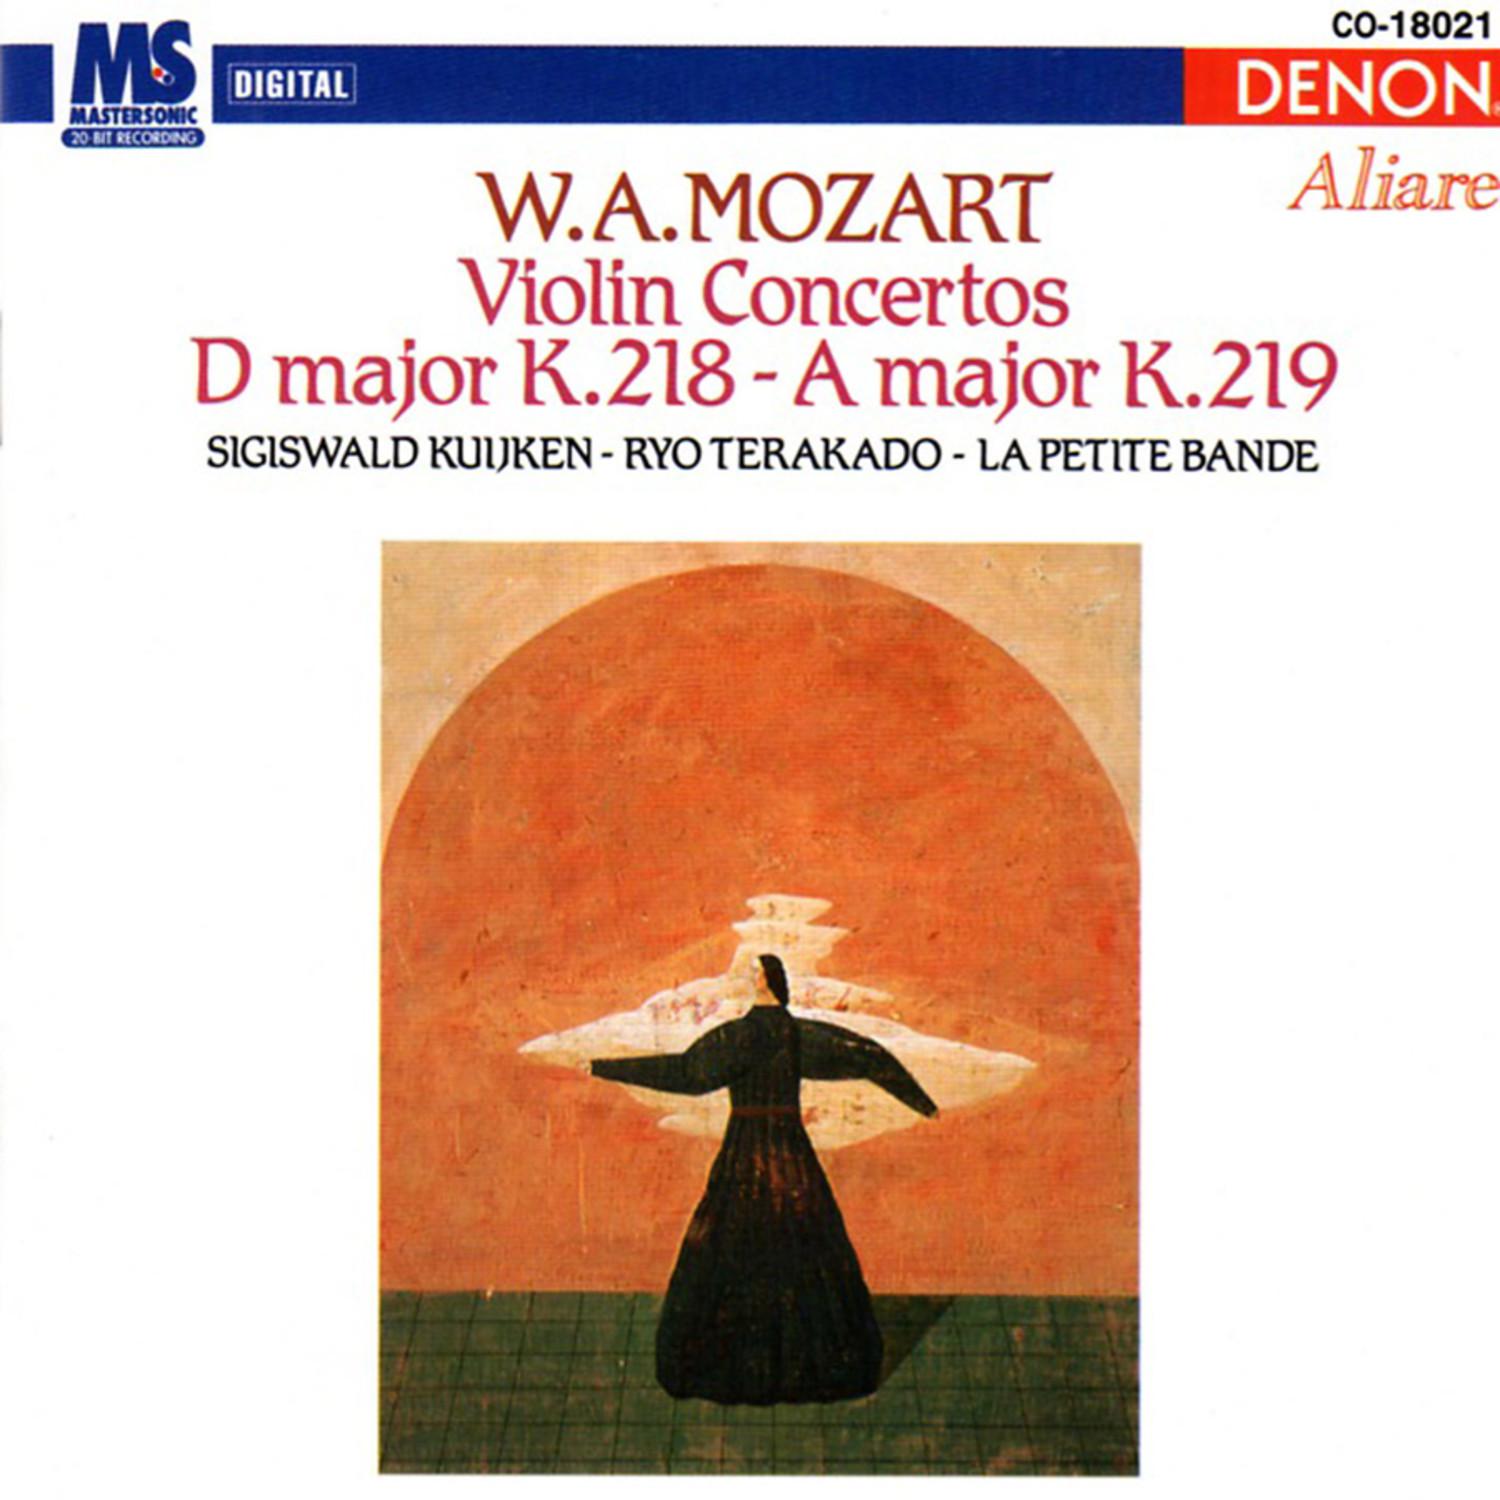 Concerto for Violin & Orchestra in A Major, K.219: I. Allegro aperto